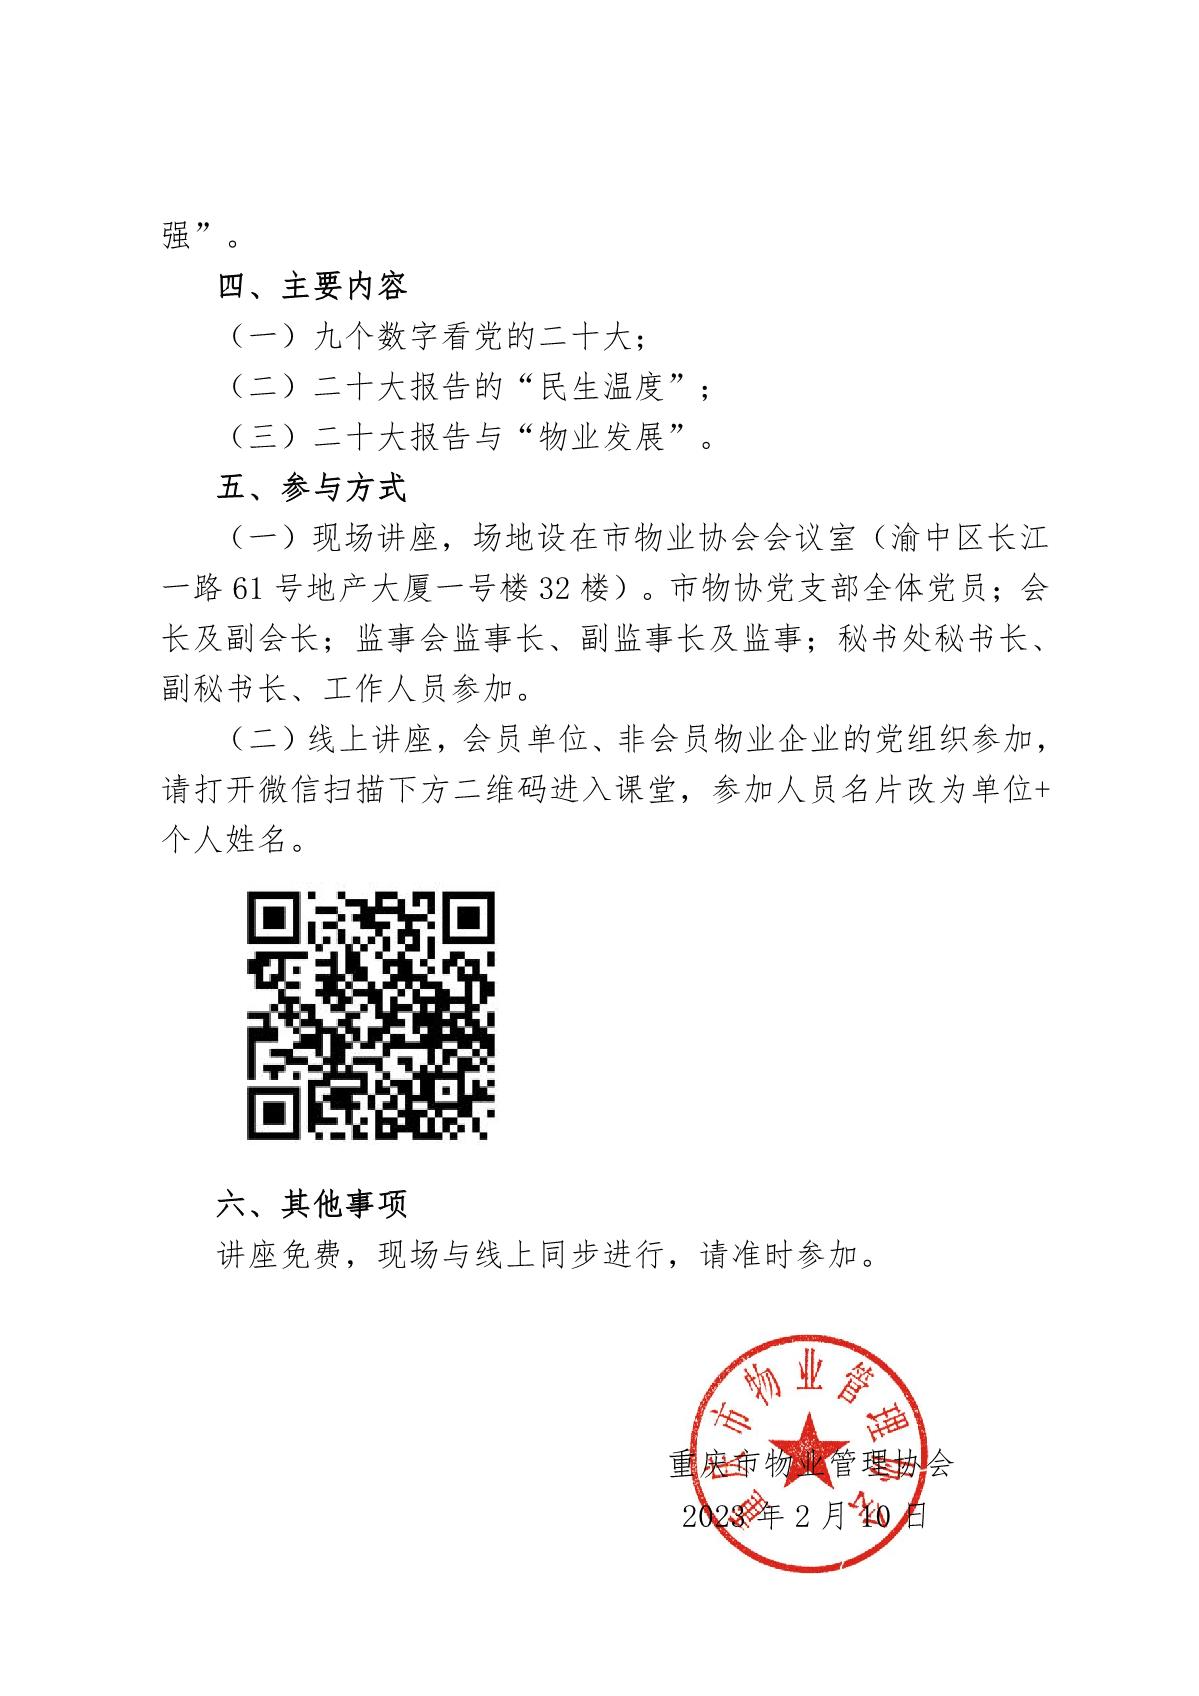 重庆市物业管理协会关于举办“学习贯彻党的二十大精神”专题讲座的通知_2.JPG